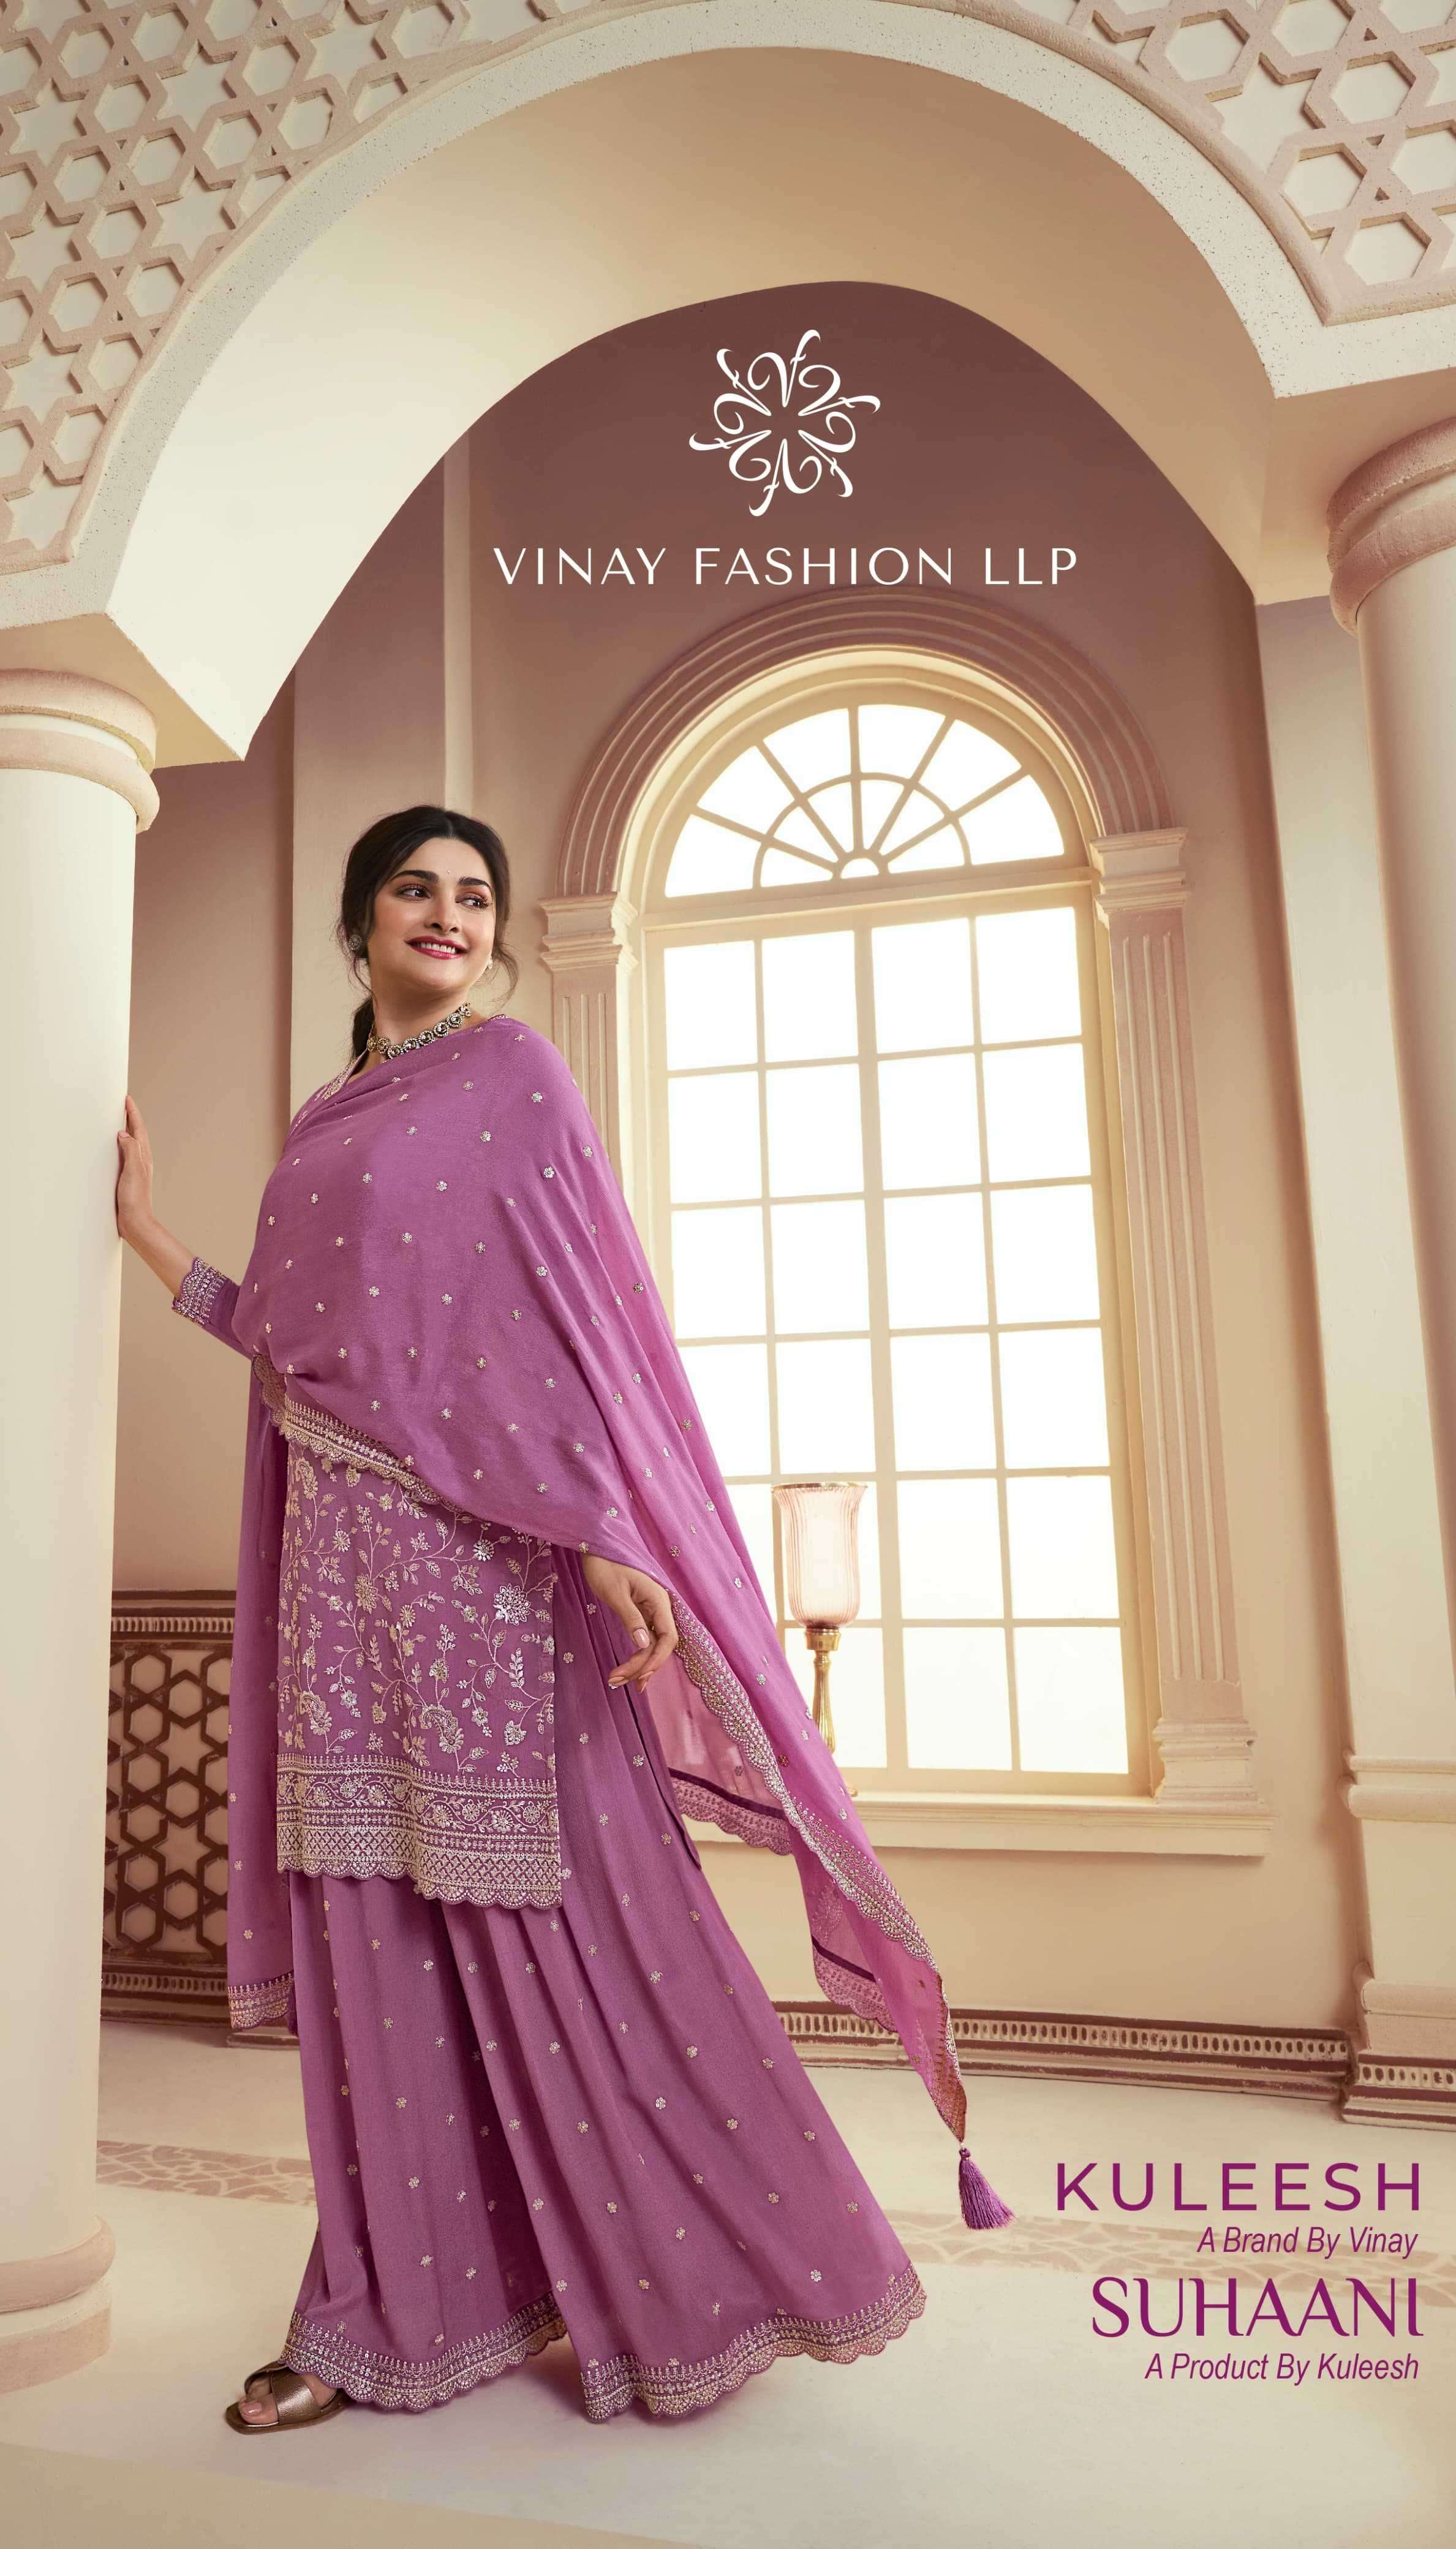 Vinay Fashions - Bridal Wear Delhi NCR | Prices & Reviews